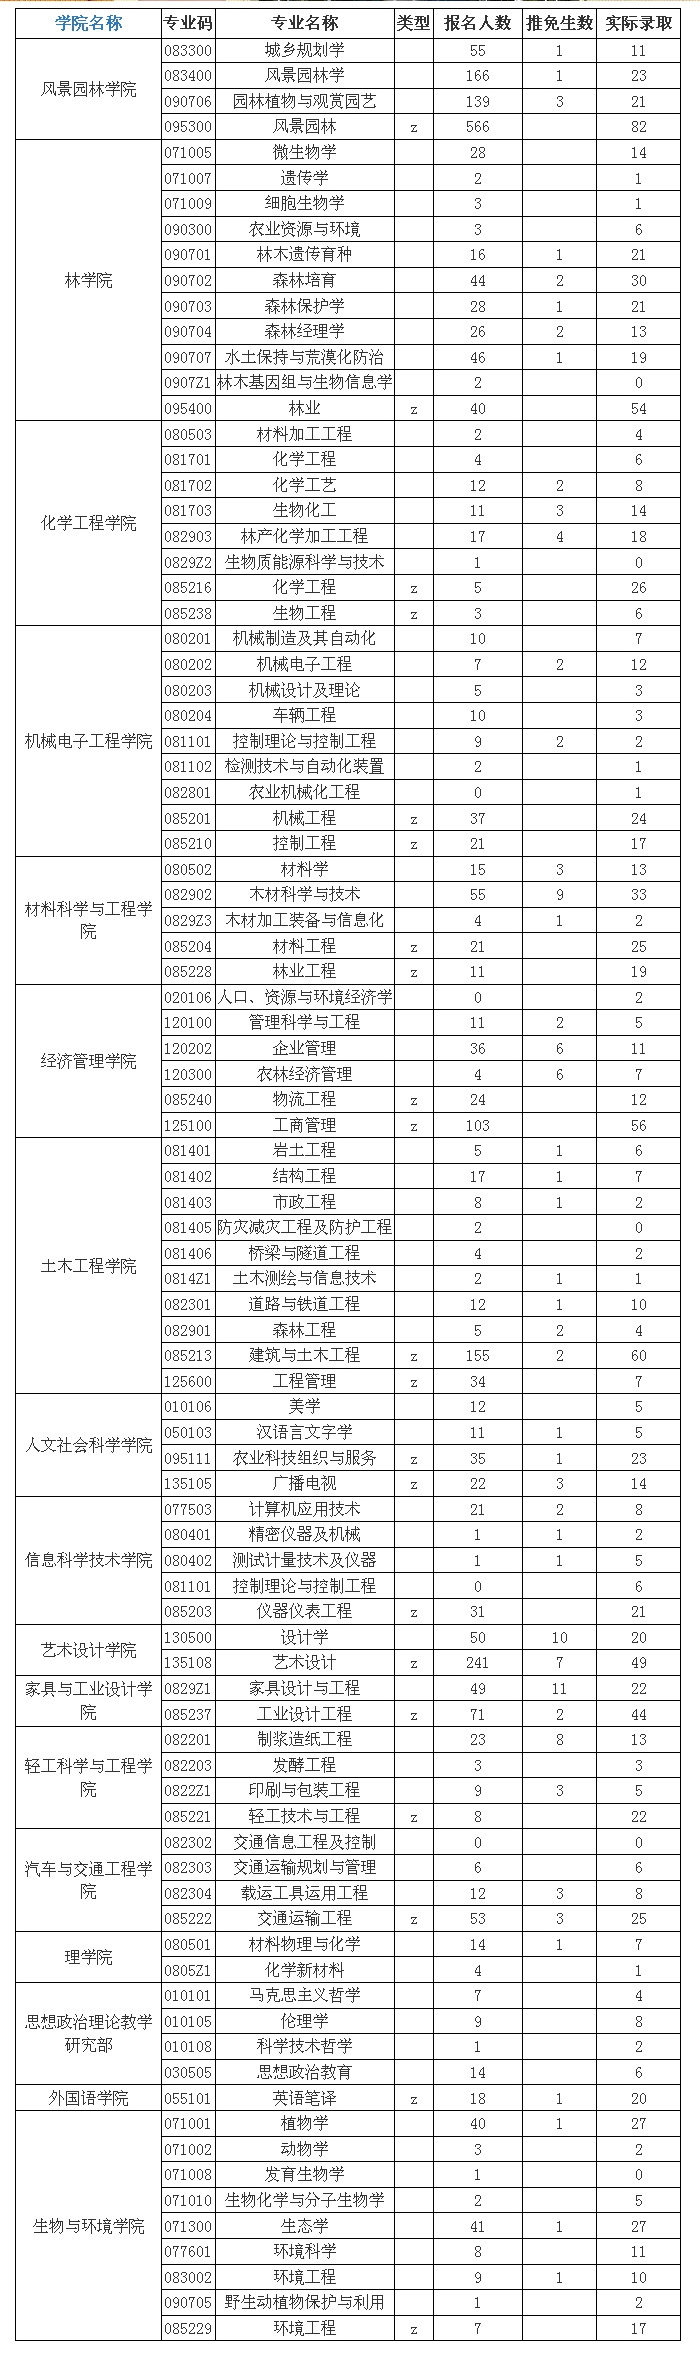 南京林业大学2016年硕士研究生报考录取比例